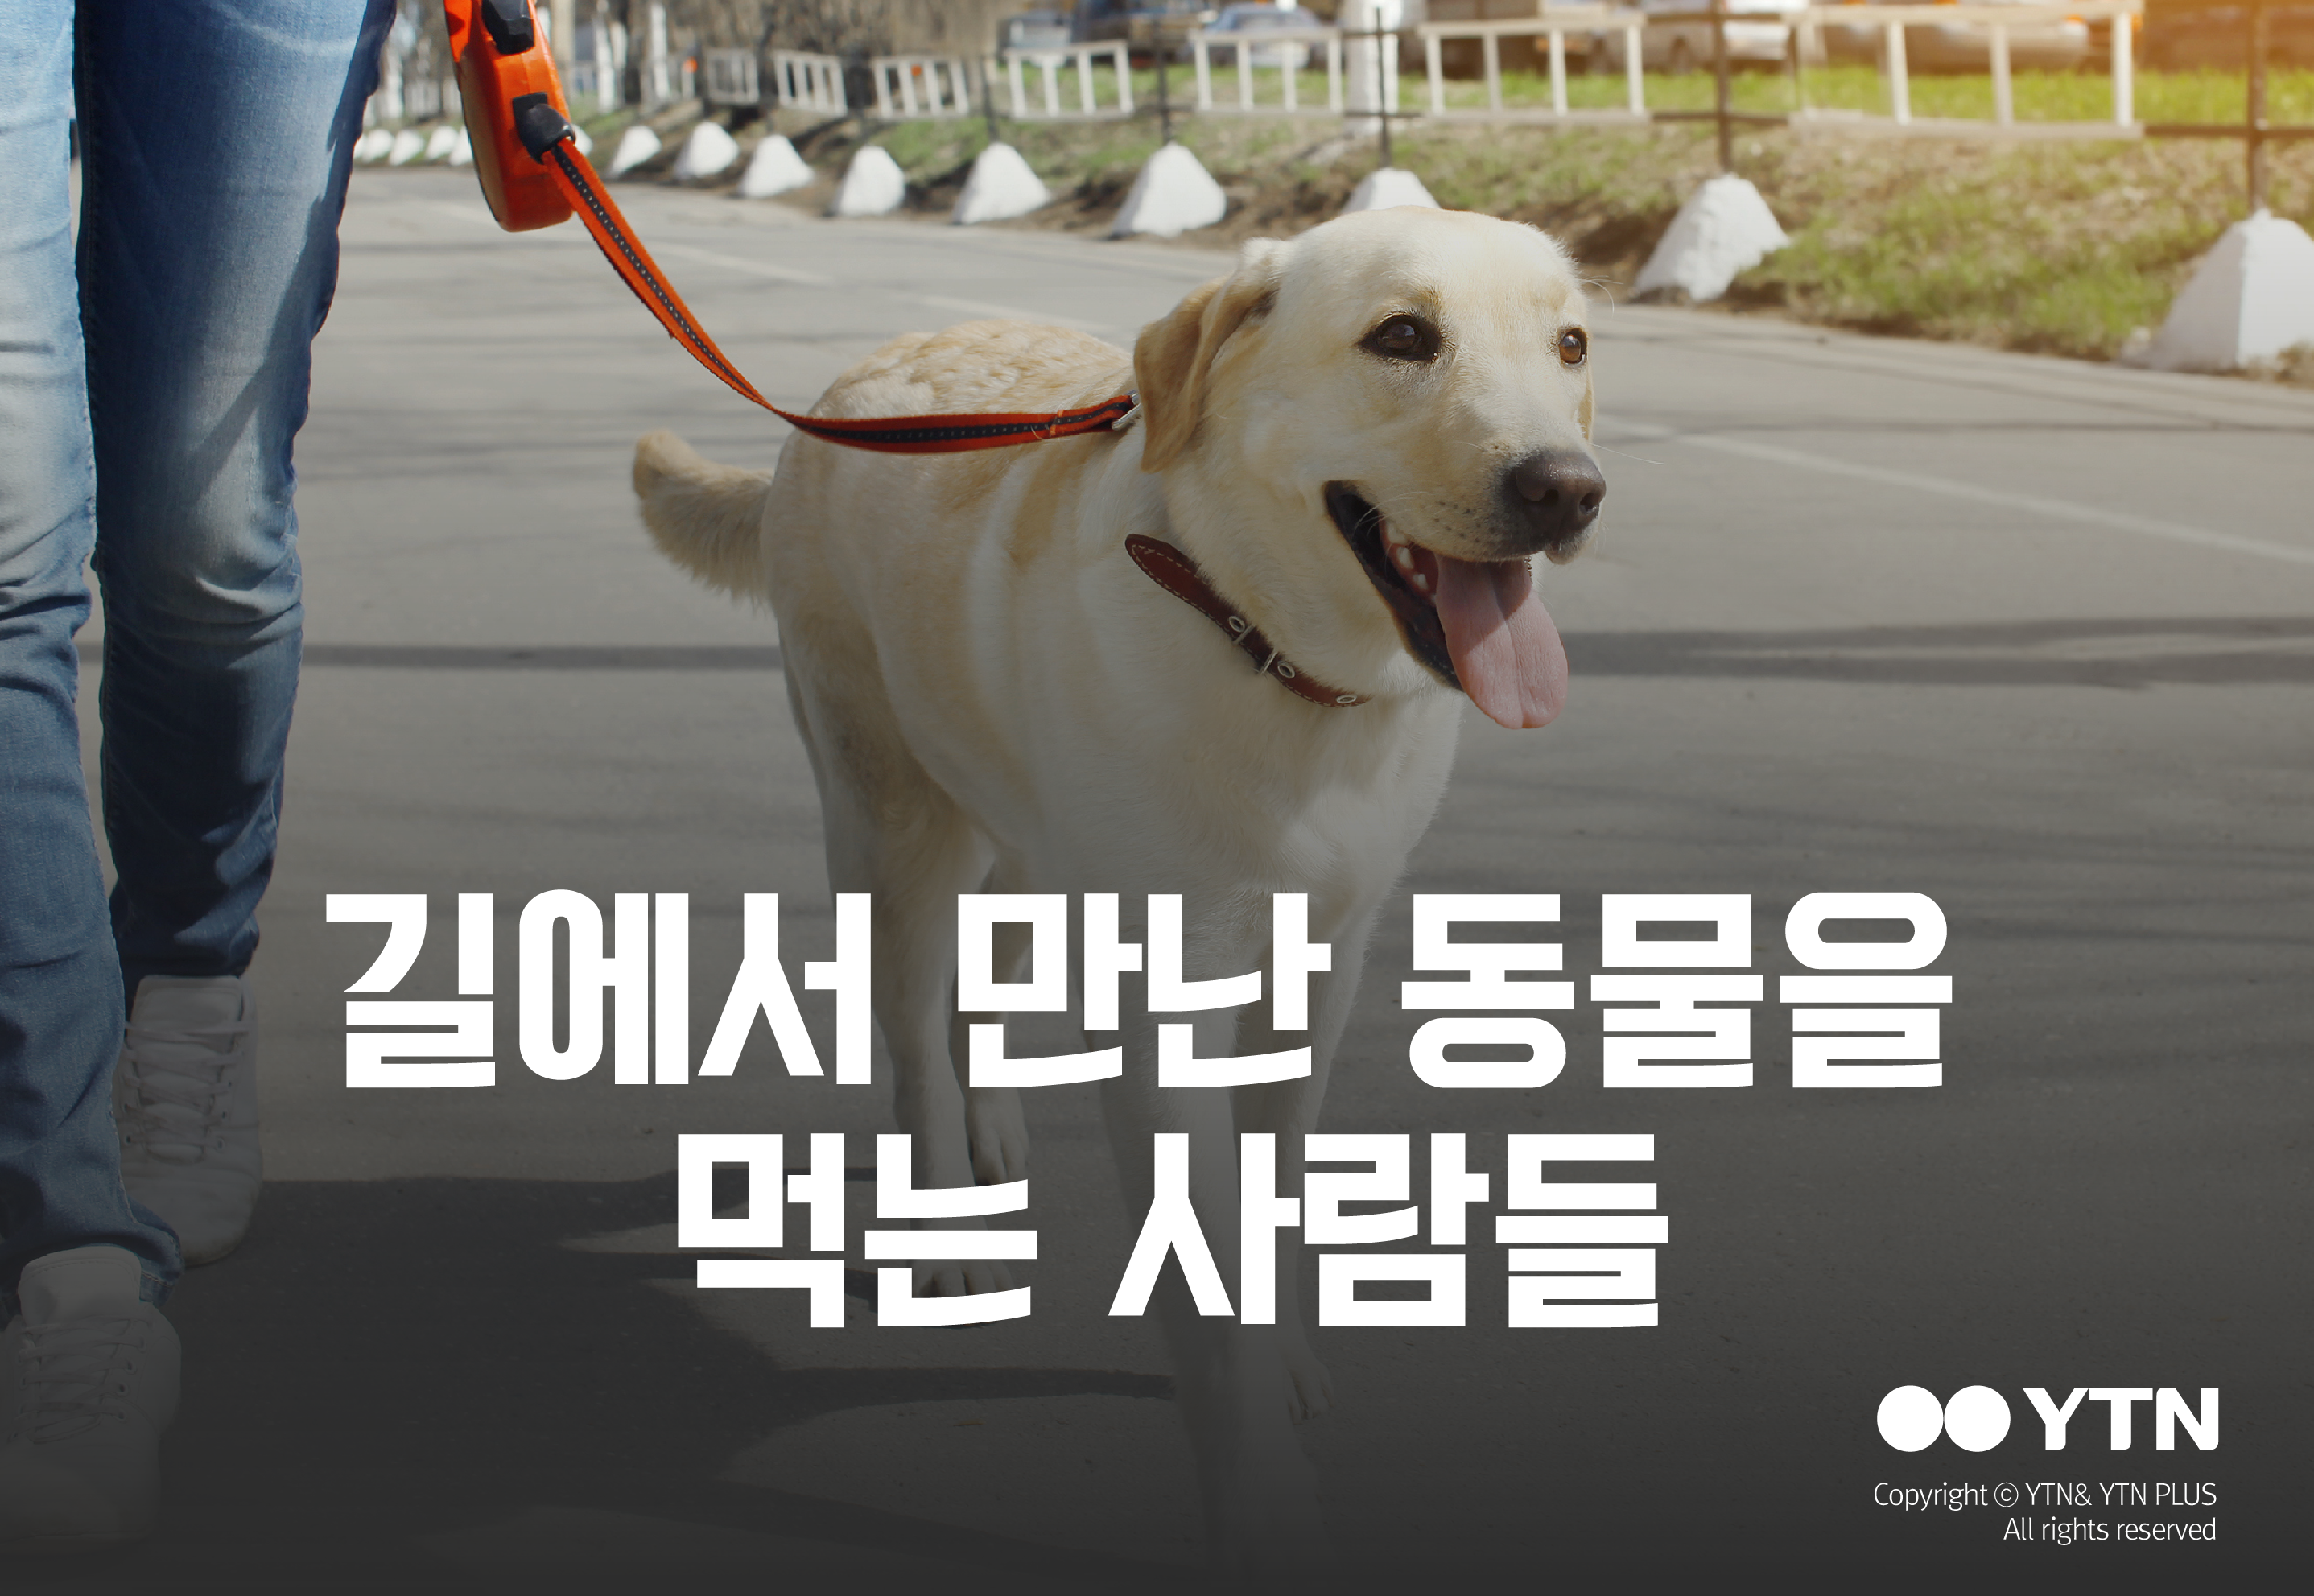 [한컷뉴스] 길에서 만난 동물을 잡아먹는 사람들